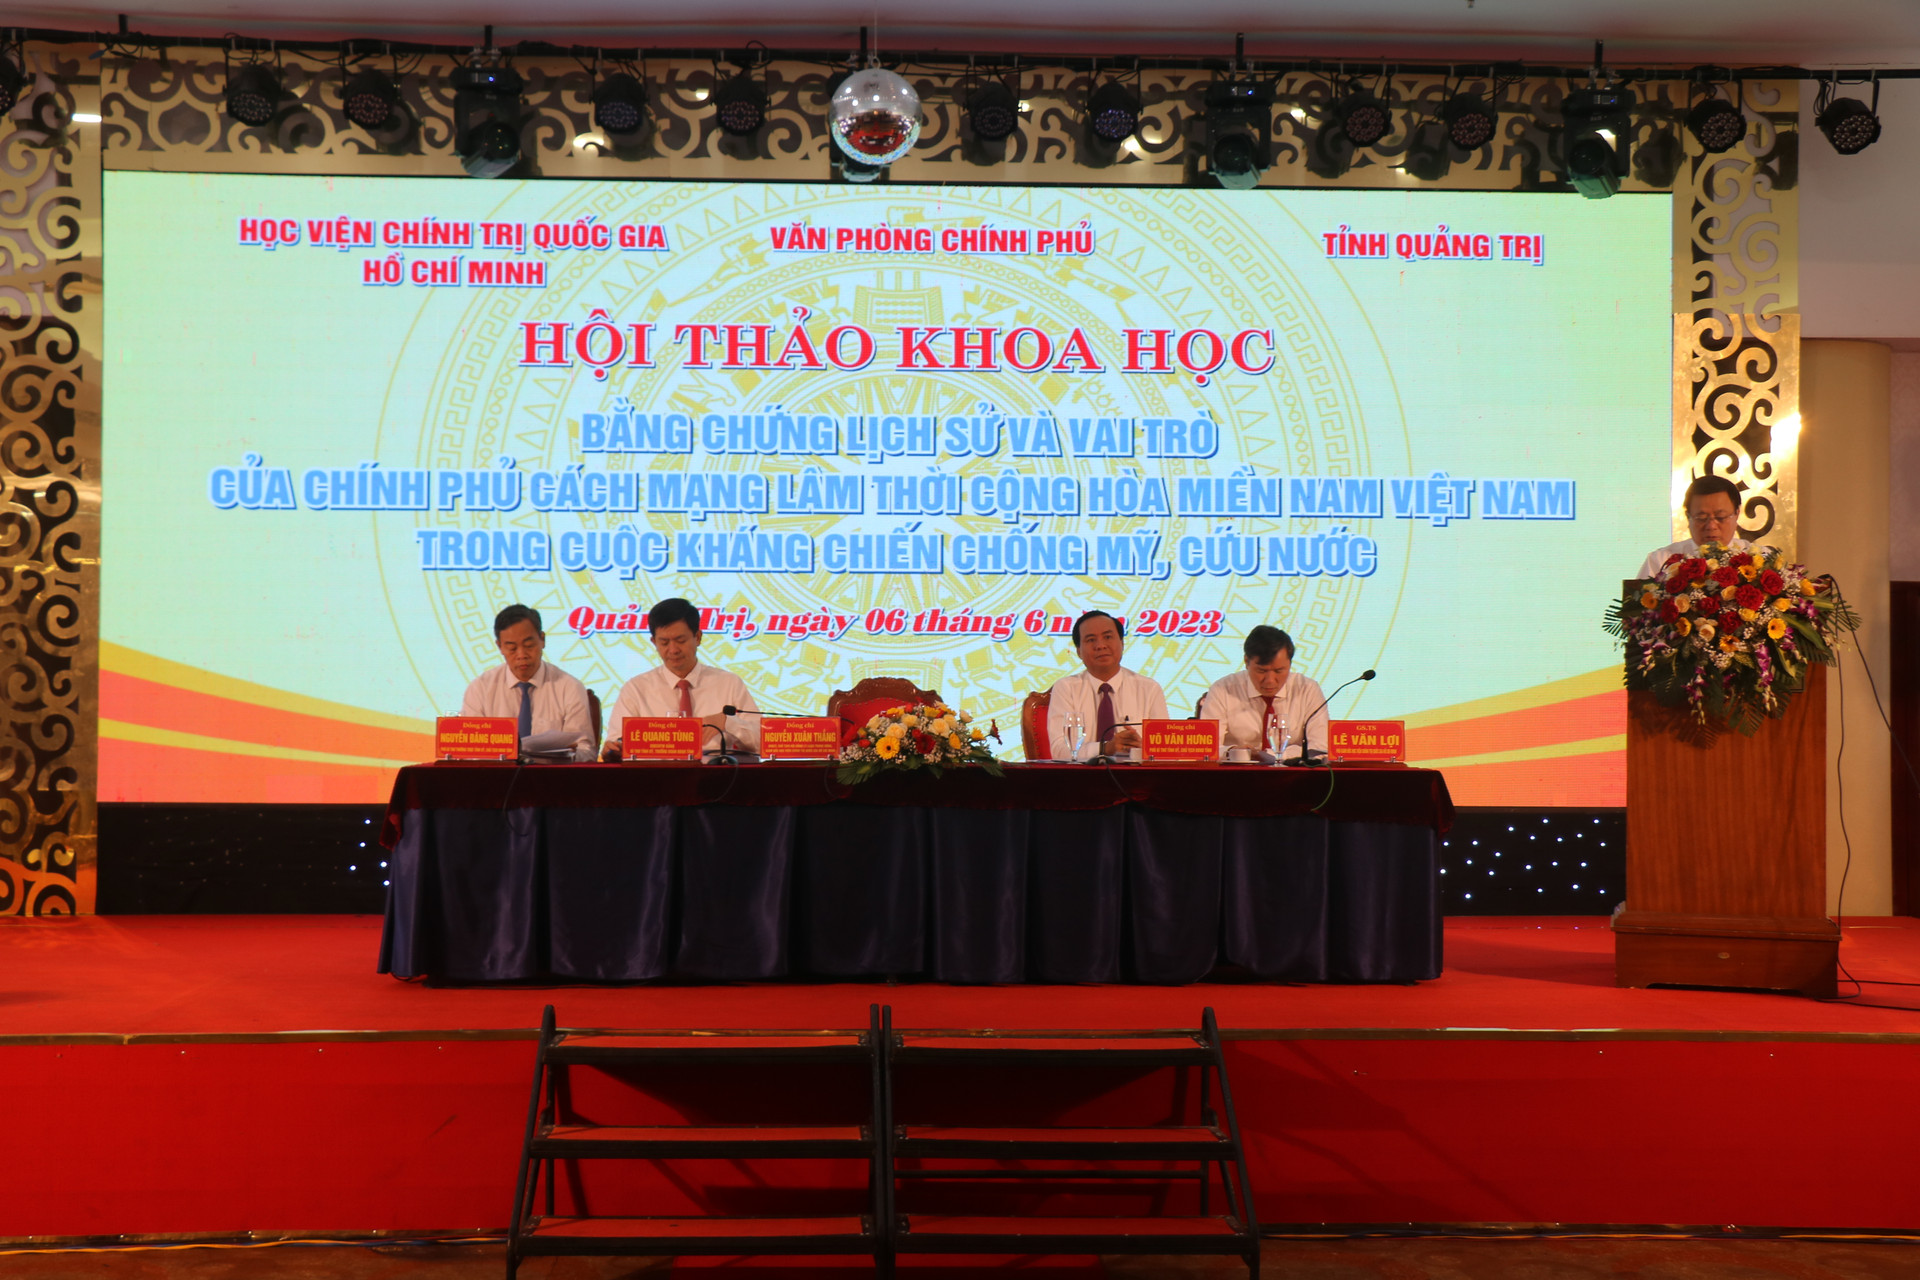 Trong đó, Hội thảo “Bằng chứng lịch sử và vai trò của Chính phủ Cách mạng lâm thời Cộng hòa miền Nam Việt Nam trong cuộc kháng chiến chống Mỹ, cứu nước” được tỉnh Quảng Trị phối hợp với Học viện Chính trị quốc gia Hồ Chí Minh và Văn phòng Chính phủ tổ chức tổ chức vào ngày 6/6 vừa qua, tại TP Đông Hà.